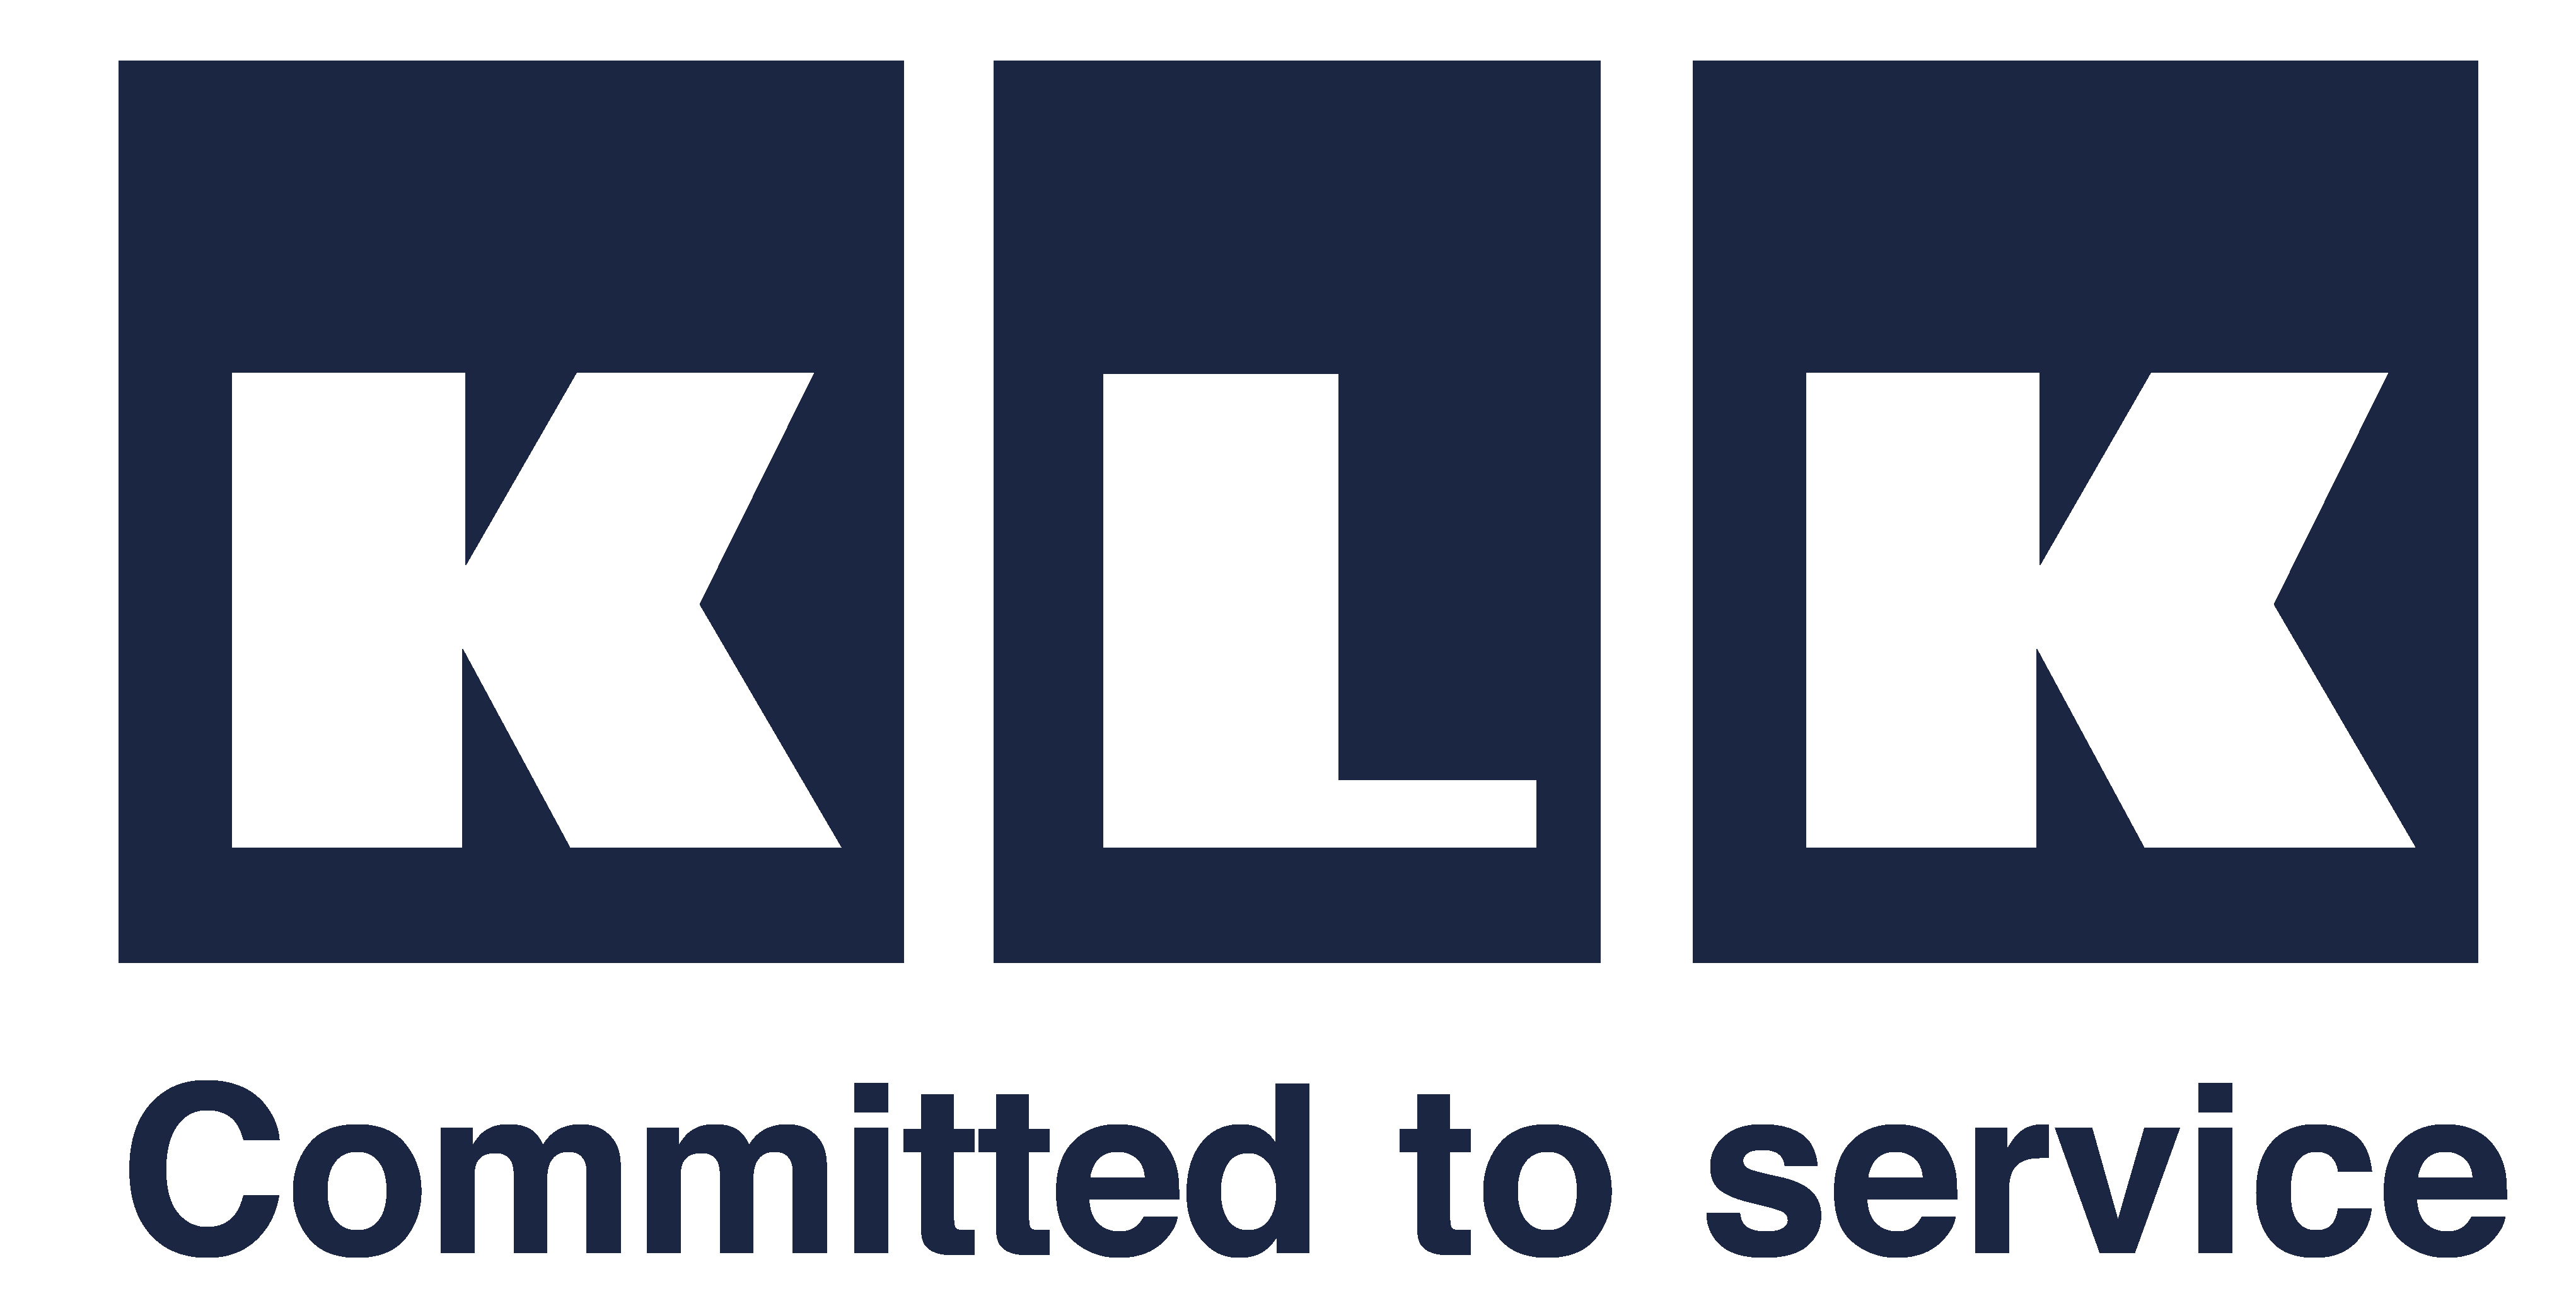 Logo KLK azul